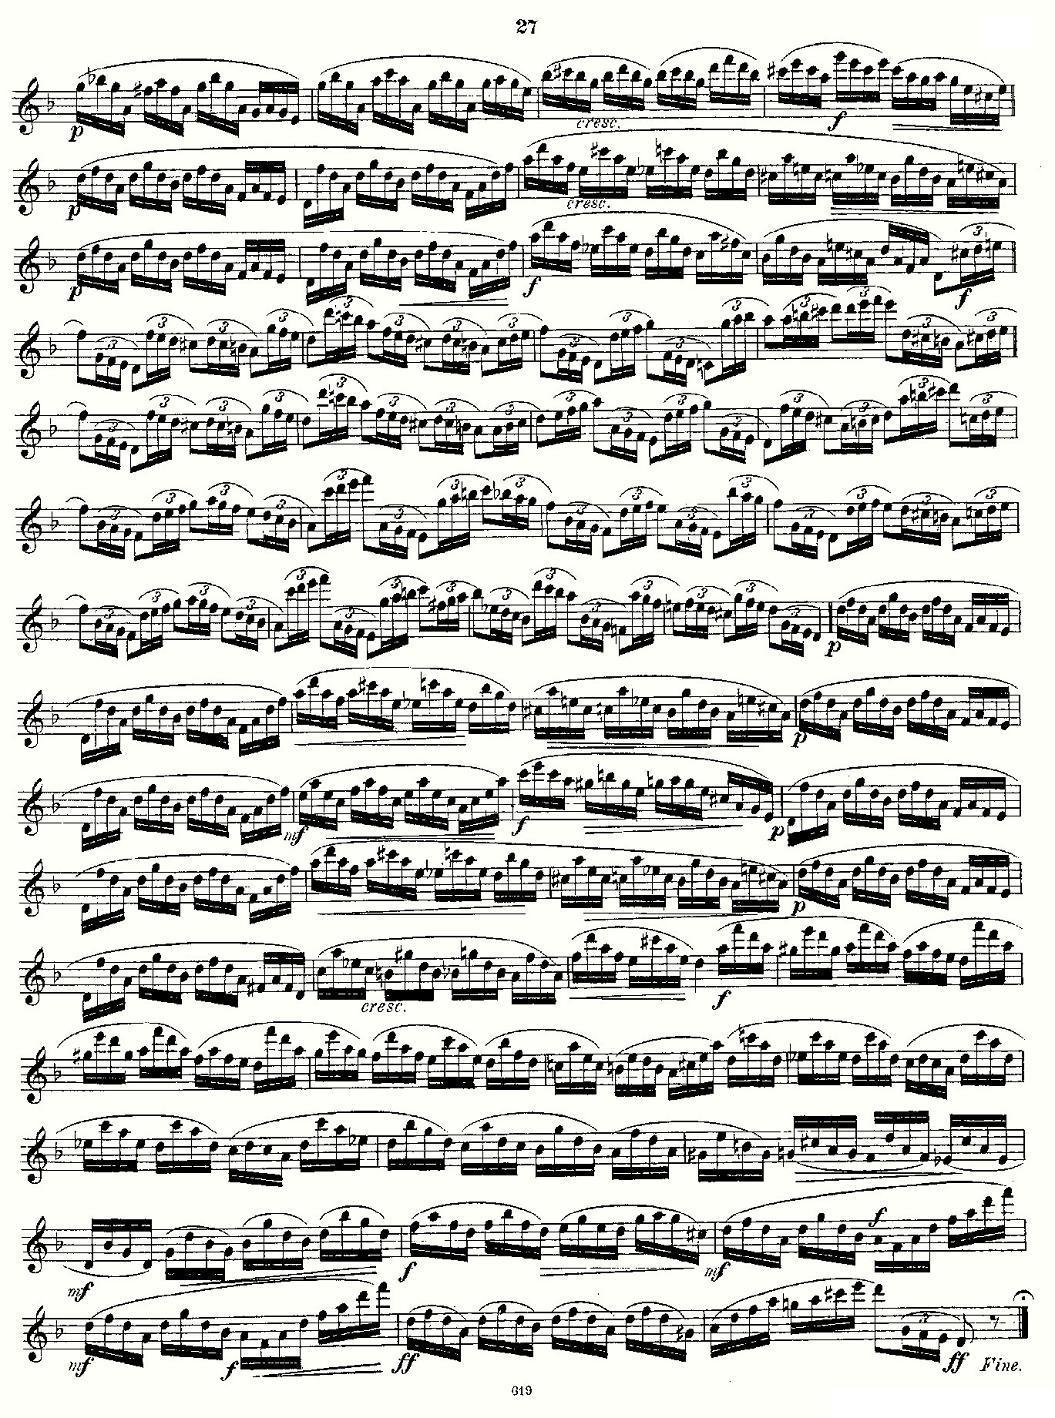 Andersen etude op30 之13—24（练习曲作品30号）其它曲谱（图15）